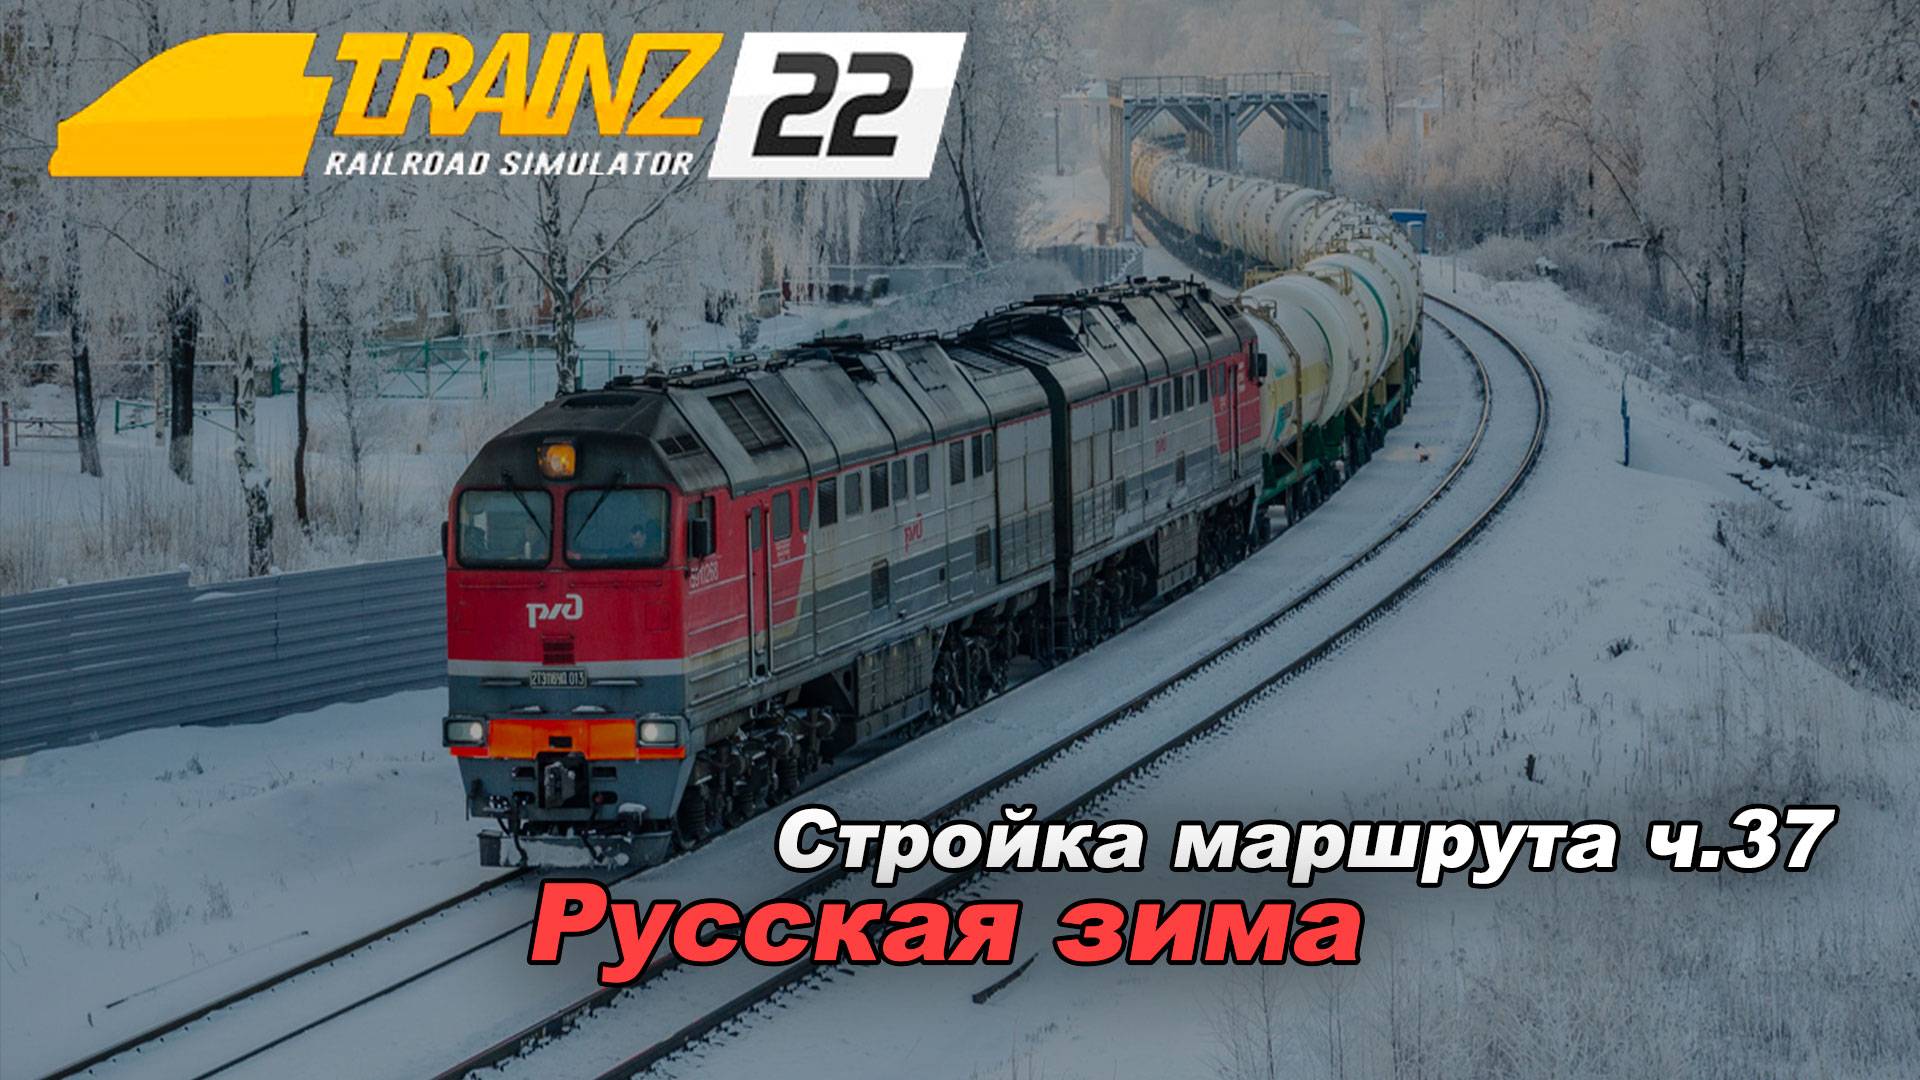 Стройка Маршрута "Русская зима" часть 37. Trainz 2022 🚂